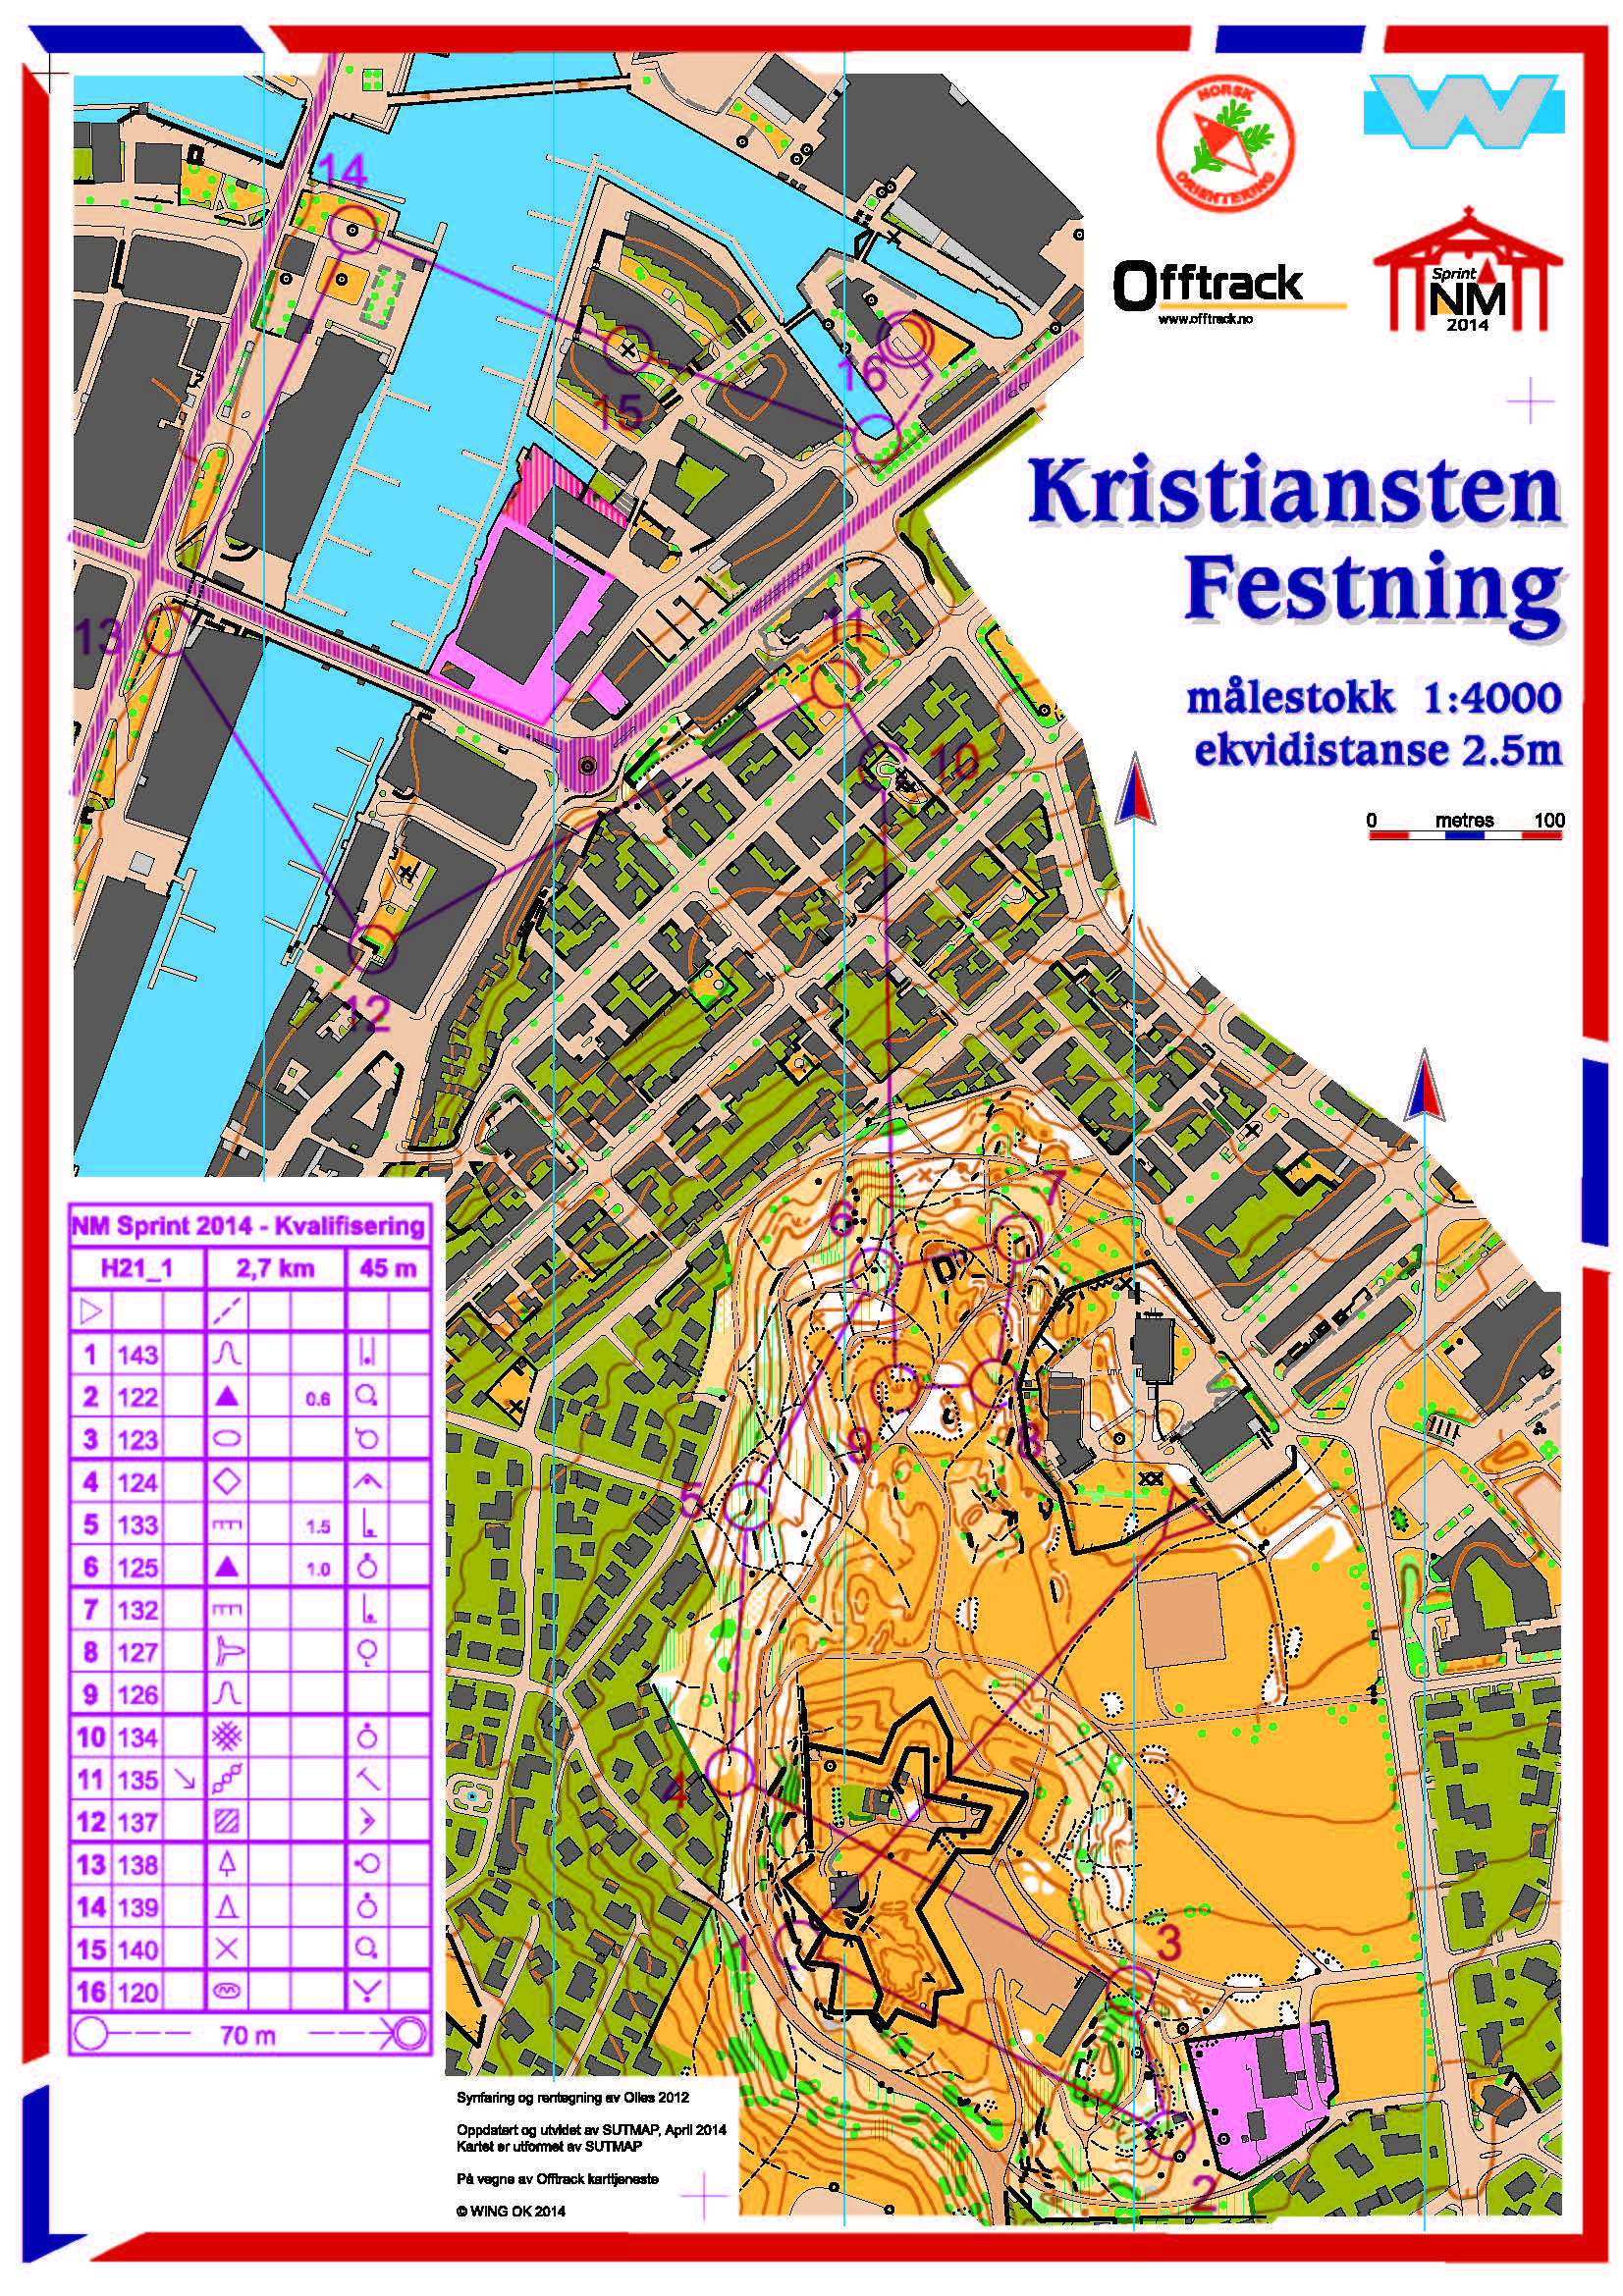 Trondheim Open Sprint (24.05.2014)